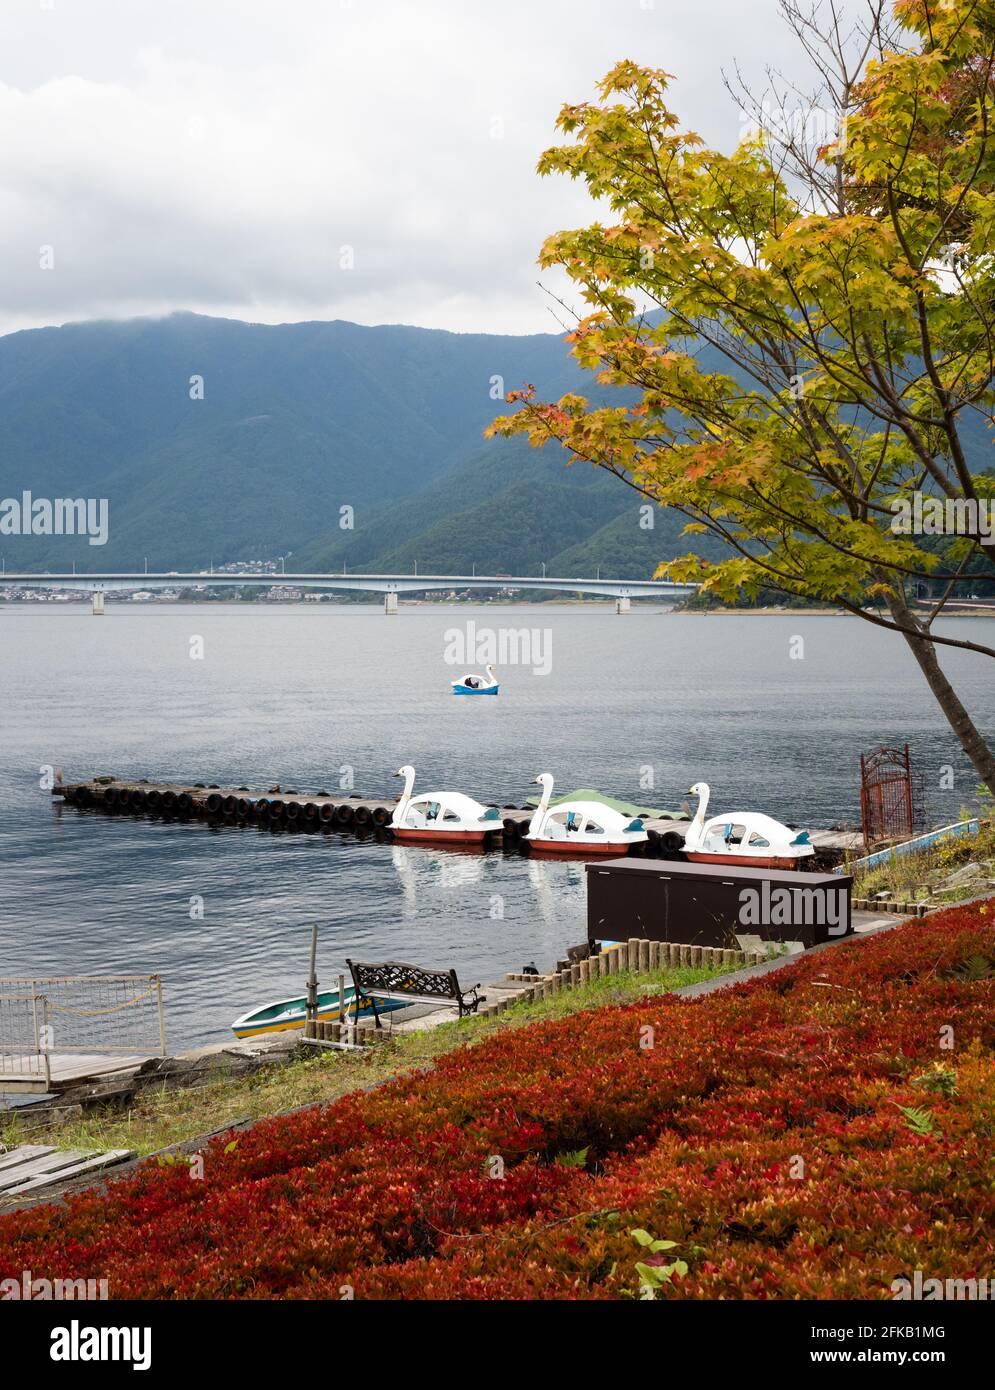 Automne au lac Kawaguchiko, promenade au bord du lac près du parc et de la station de téléphérique de Rinsaku, avec le pont Kawaguchiko Ohashi à l'arrière-plan - Yamanashi pre Banque D'Images